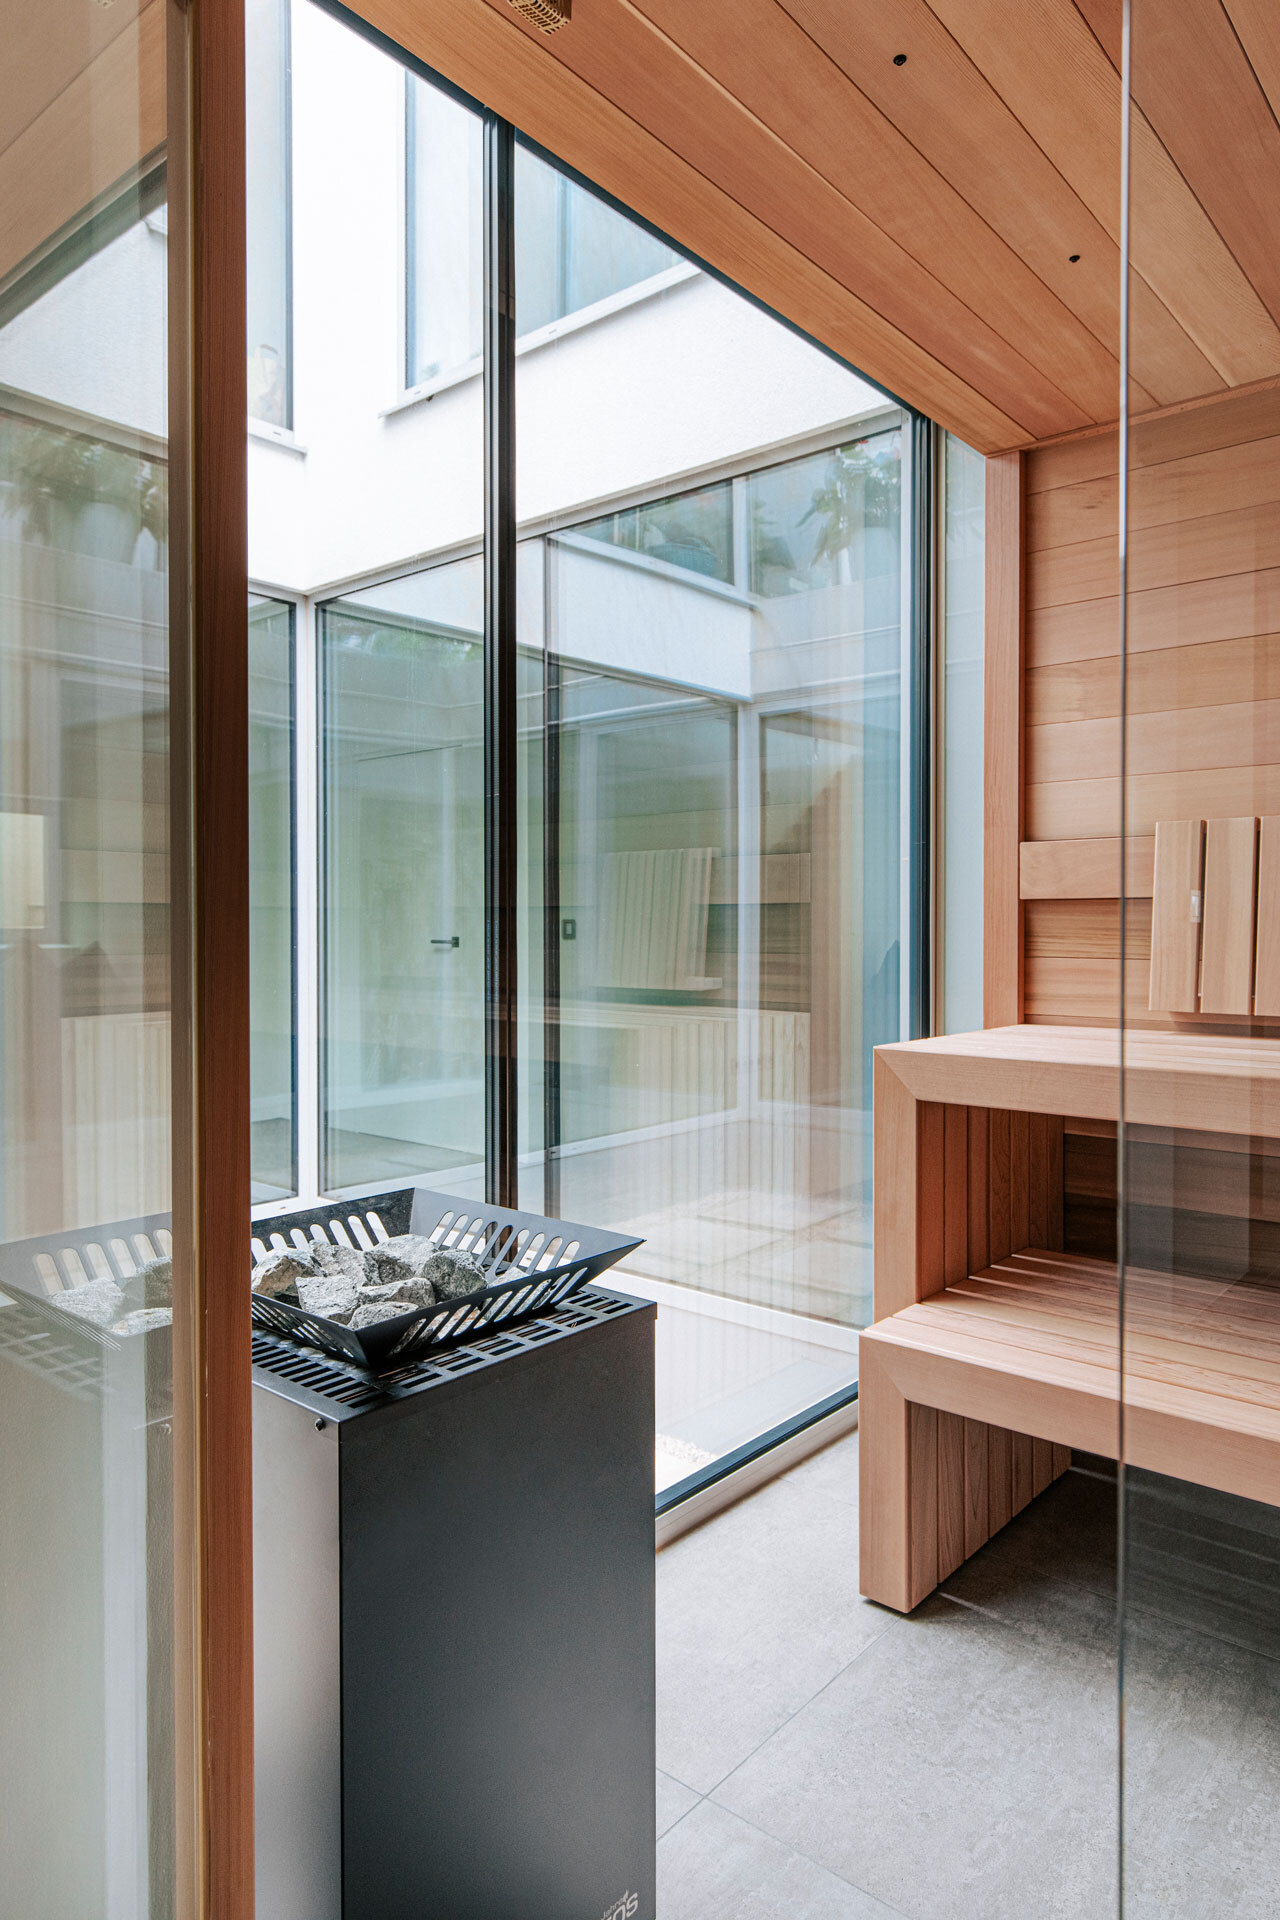 Puristische Design-Sauna aus kanadischem Zedernholz mit einem freistehenden Saunaofen und rahmenloser integriertes großes Panoramafenster .